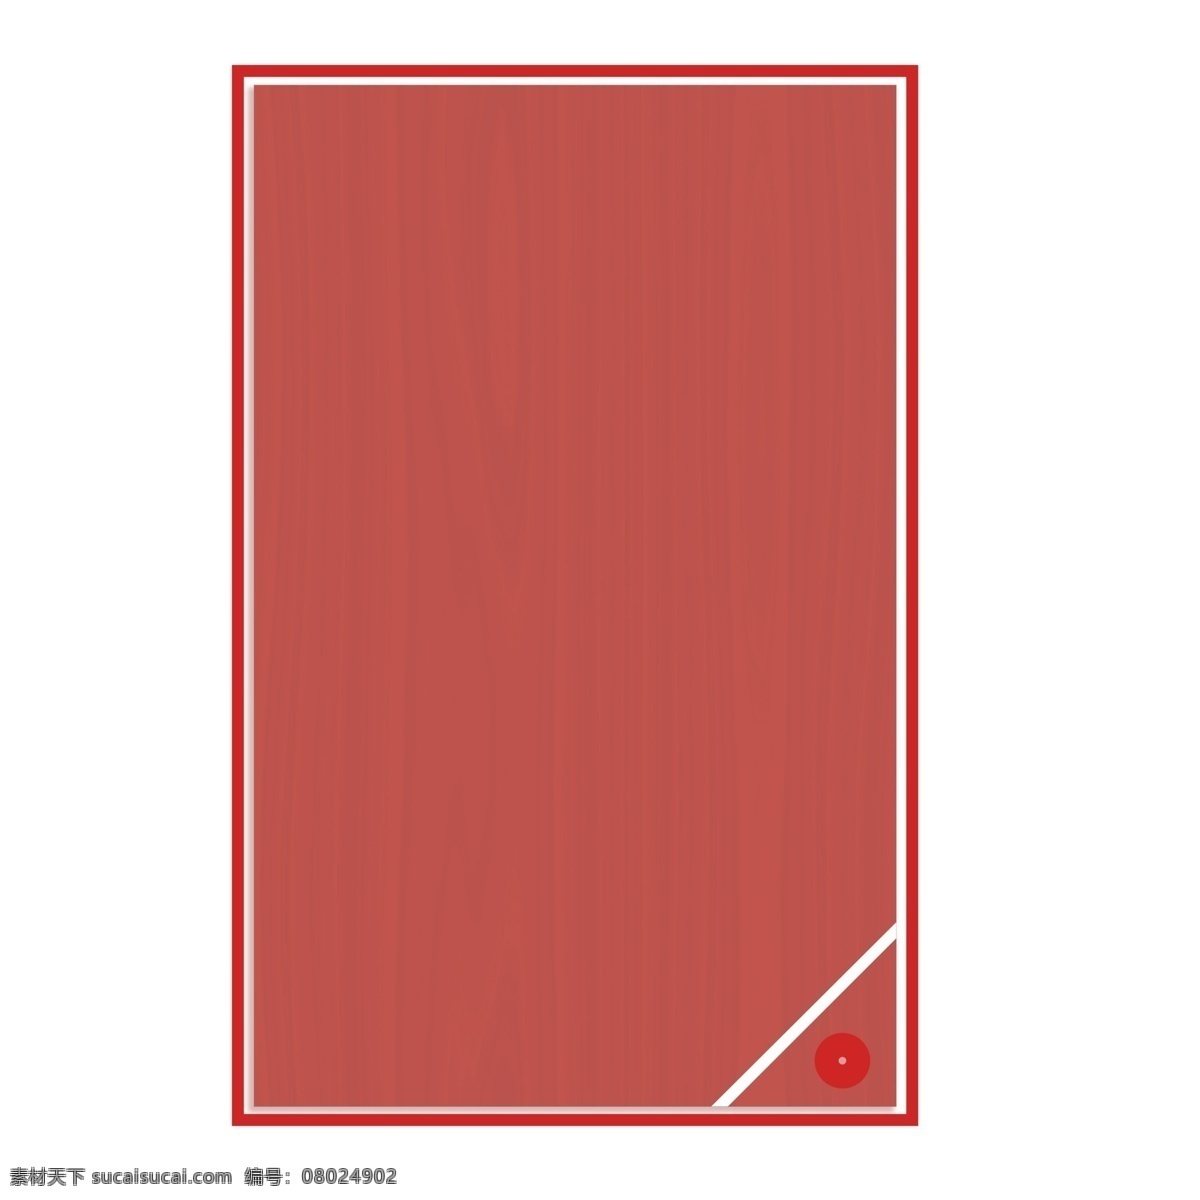 深 红色 矩形 边框 深红色